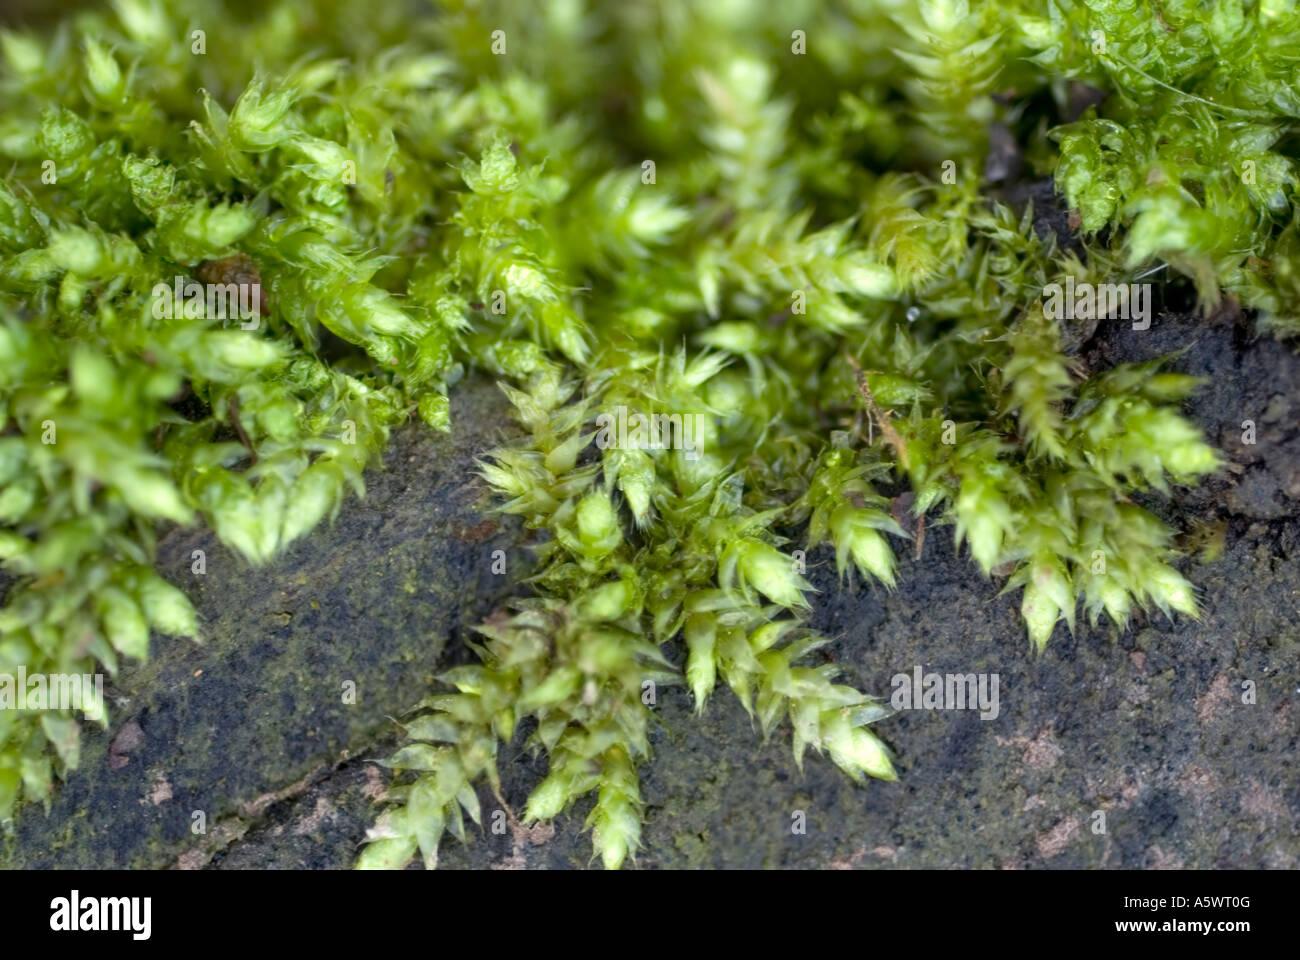 mossy-club-moss-selaginella-kraussiana-growing-on-a-log-A5WT0G.jpg